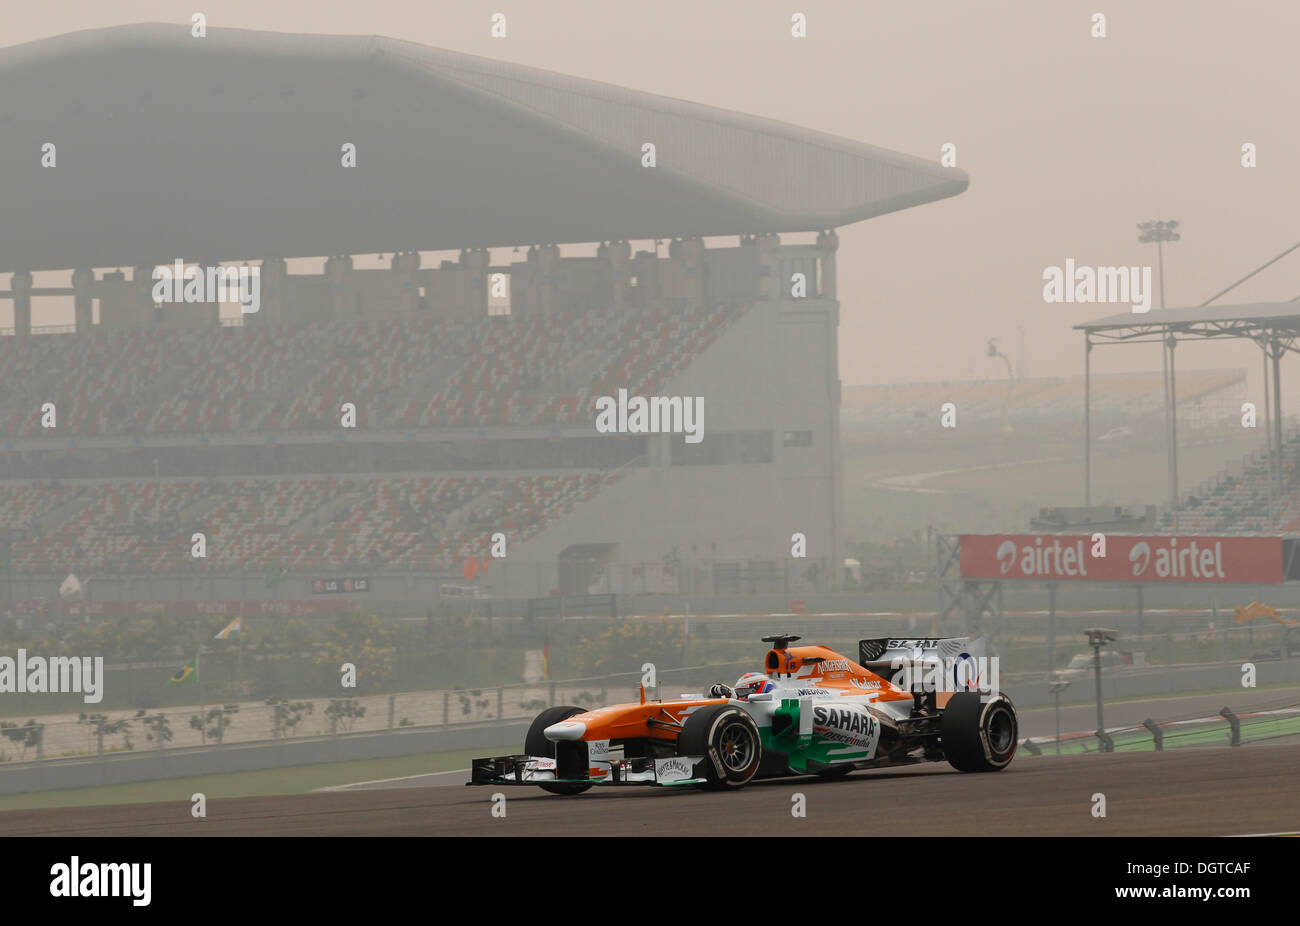 Mayor Noida, India. 25 Oct, 2013. Automovilismo: Campeonato del Mundo de Fórmula Uno FIA 2013, Gran Premio de la India, #14 Paul di Resta (GBR, Sahara Force India F1 Team), el crédito: dpa picture alliance/Alamy Live News Foto de stock